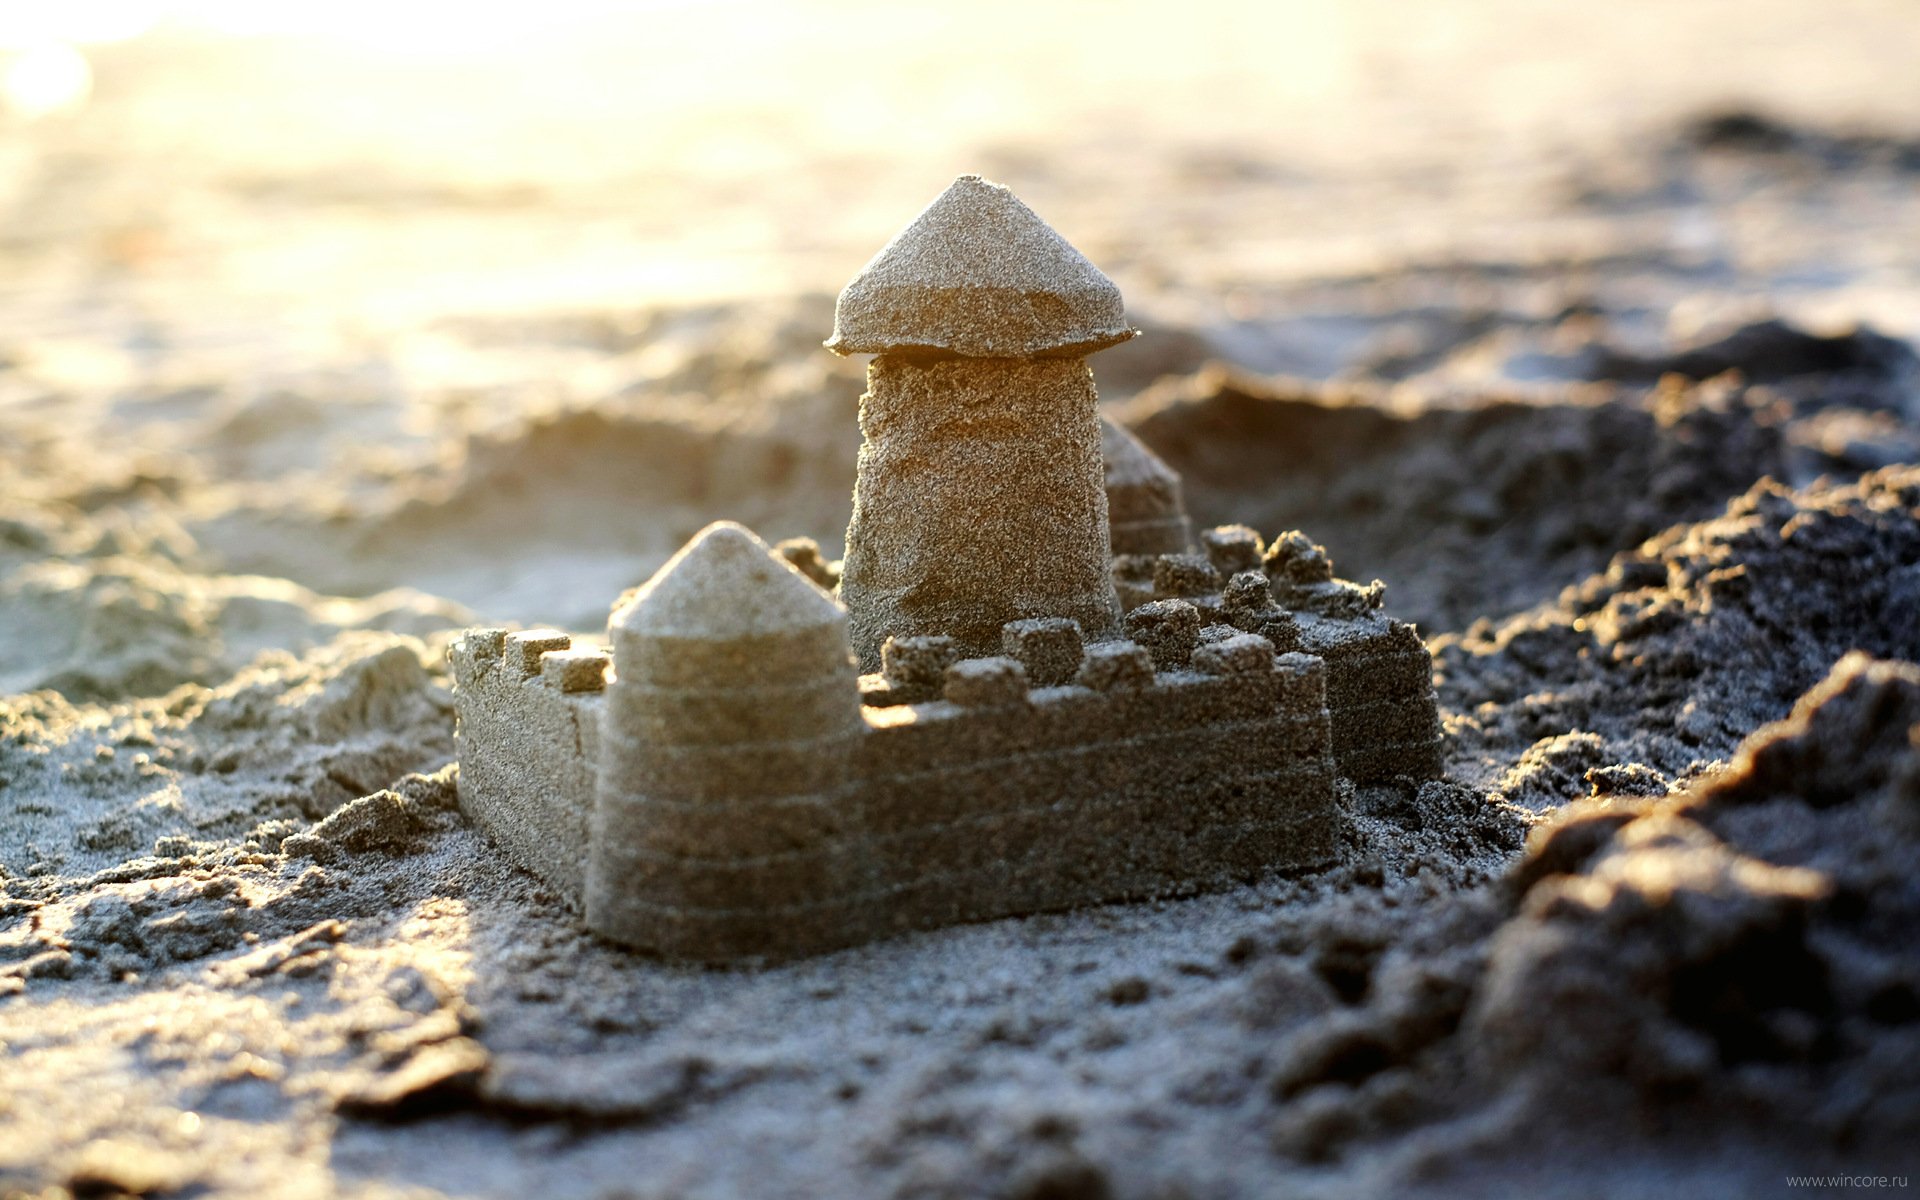 Sandcastle picture. Песочный замок. Замок из песка. Домик из песка. Разрушенный песочный замок.